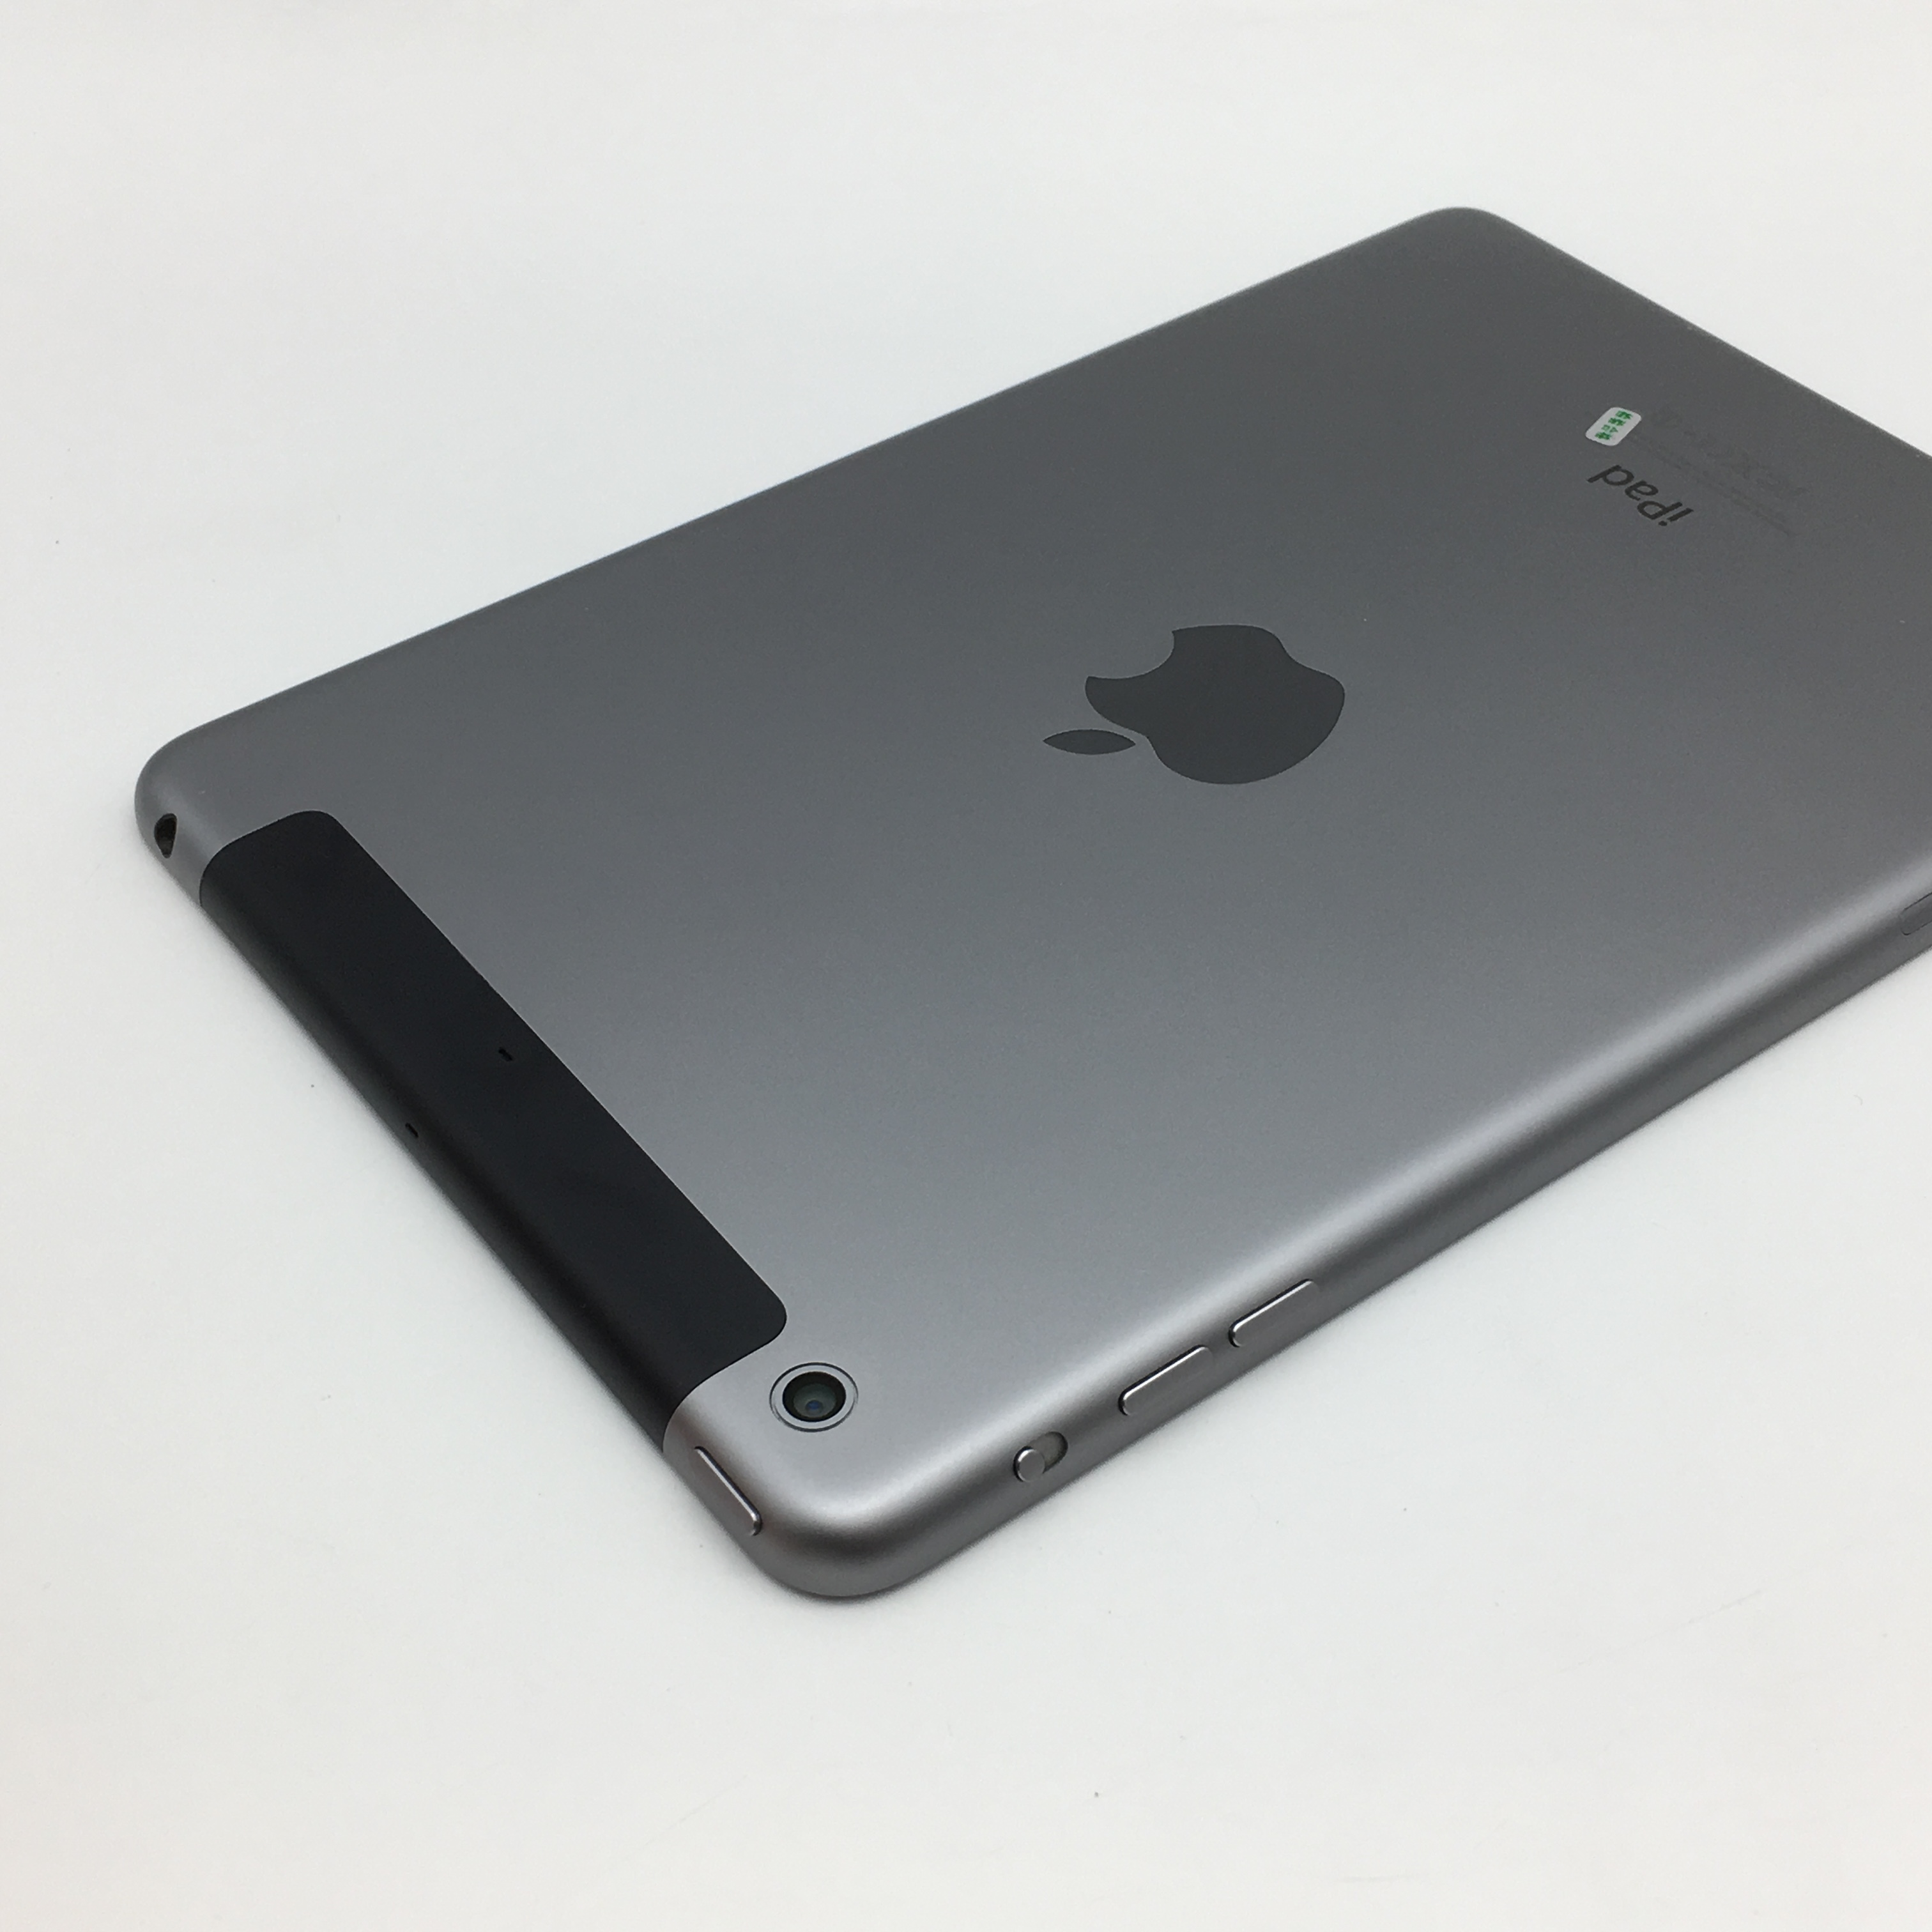 苹果【ipad mini2】3g版 灰色 16g 9成新 真机实拍